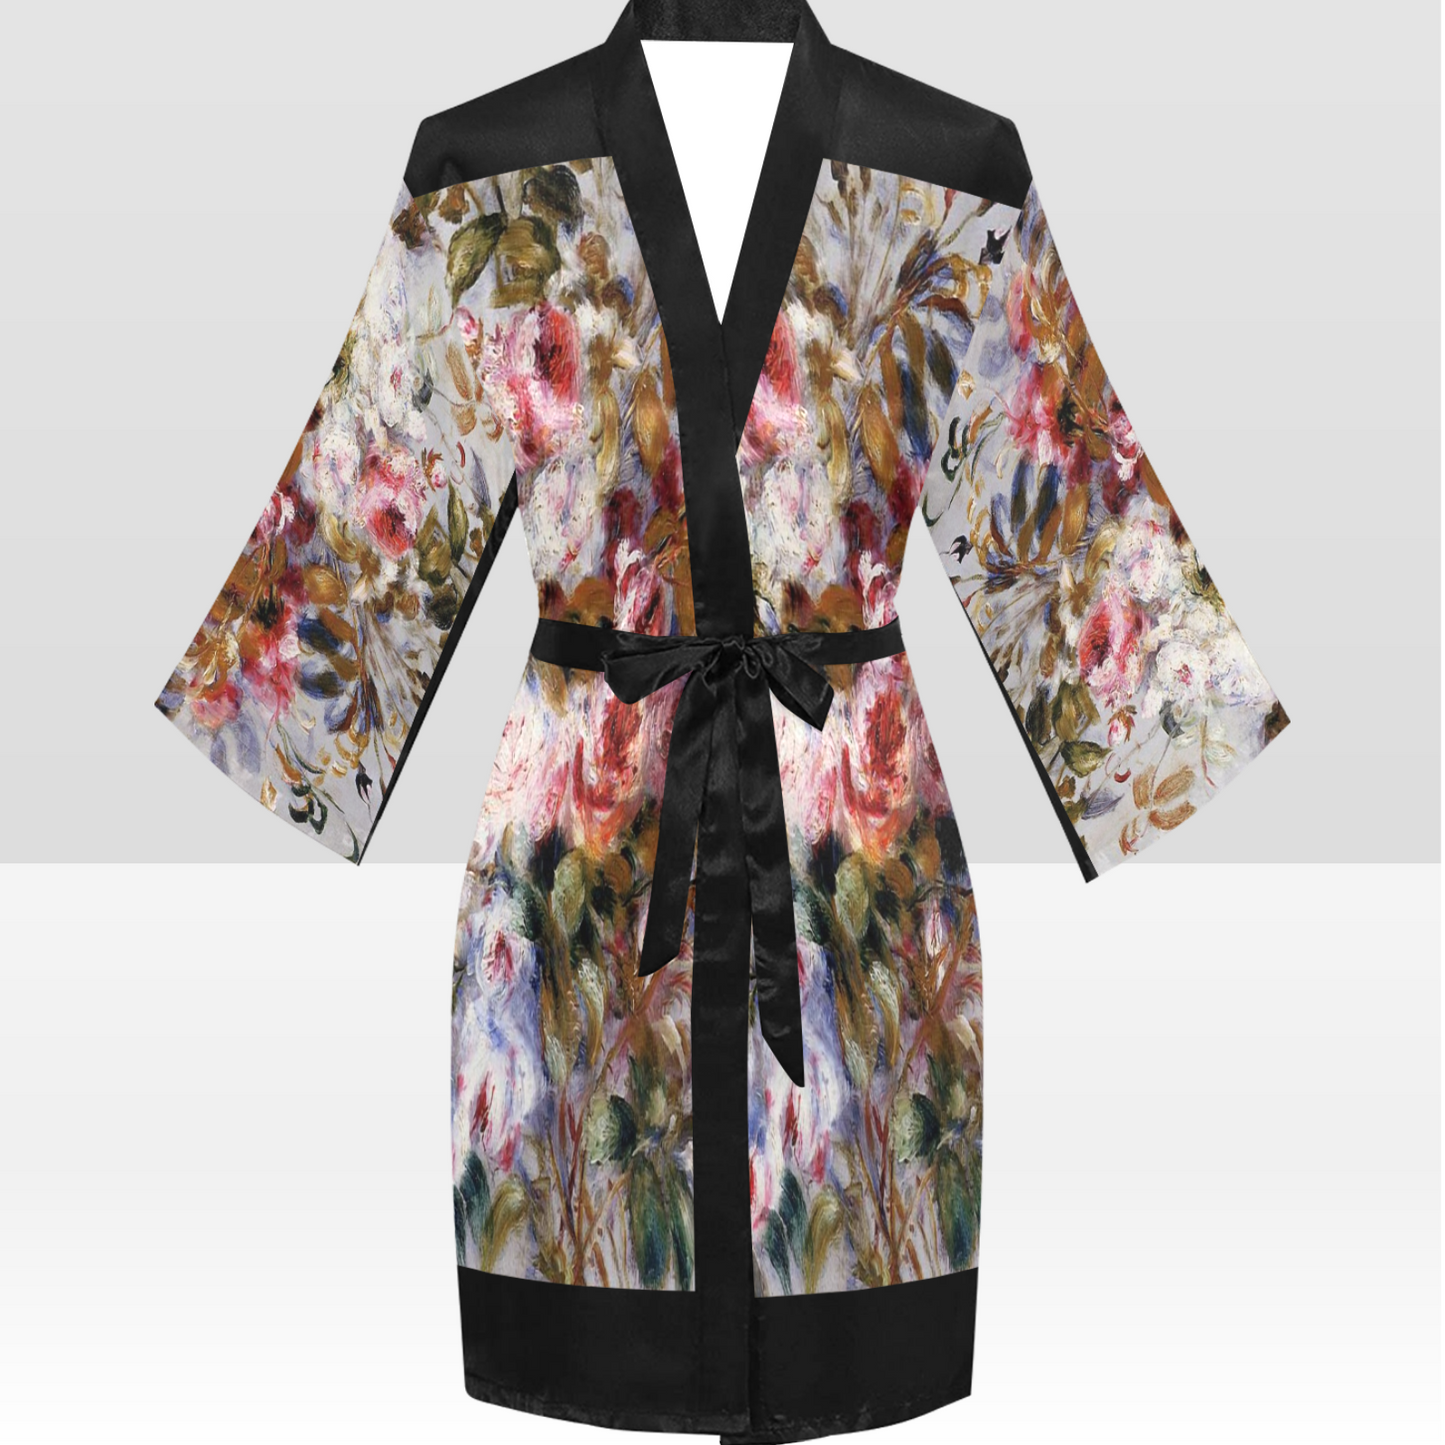 Vintage Floral Kimono Robe, Black or White Trim, Sizes XS to 2XL, Design 12